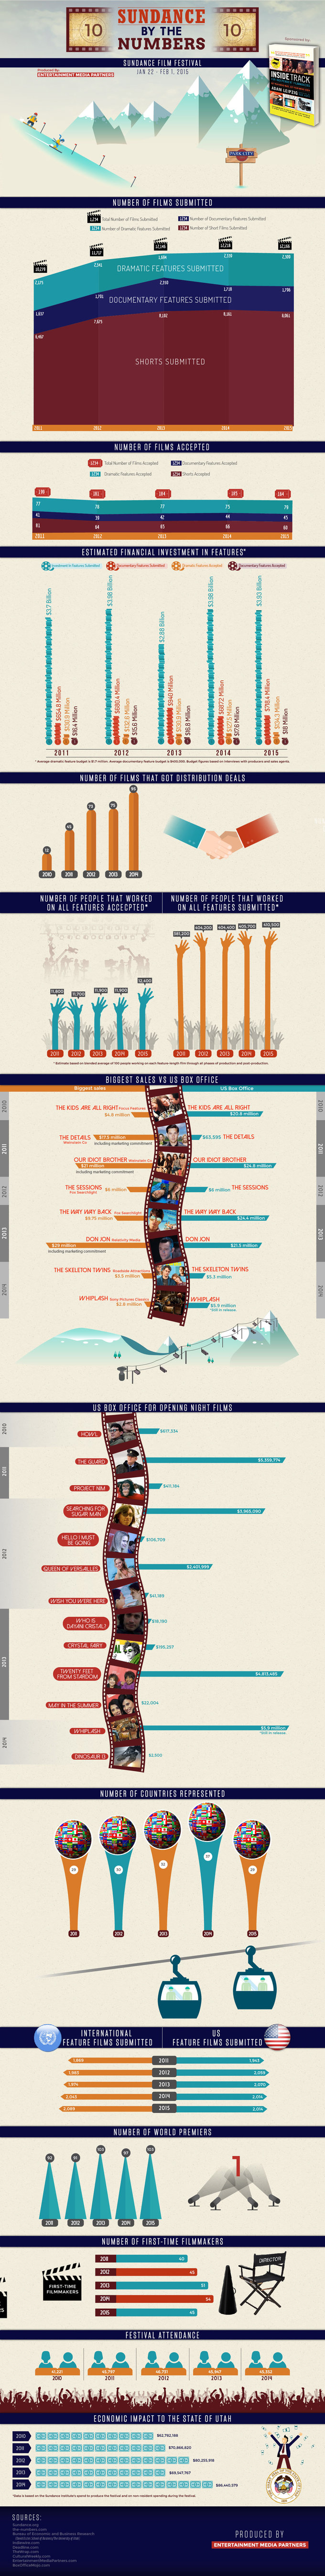 Sundance Film Festival infographic